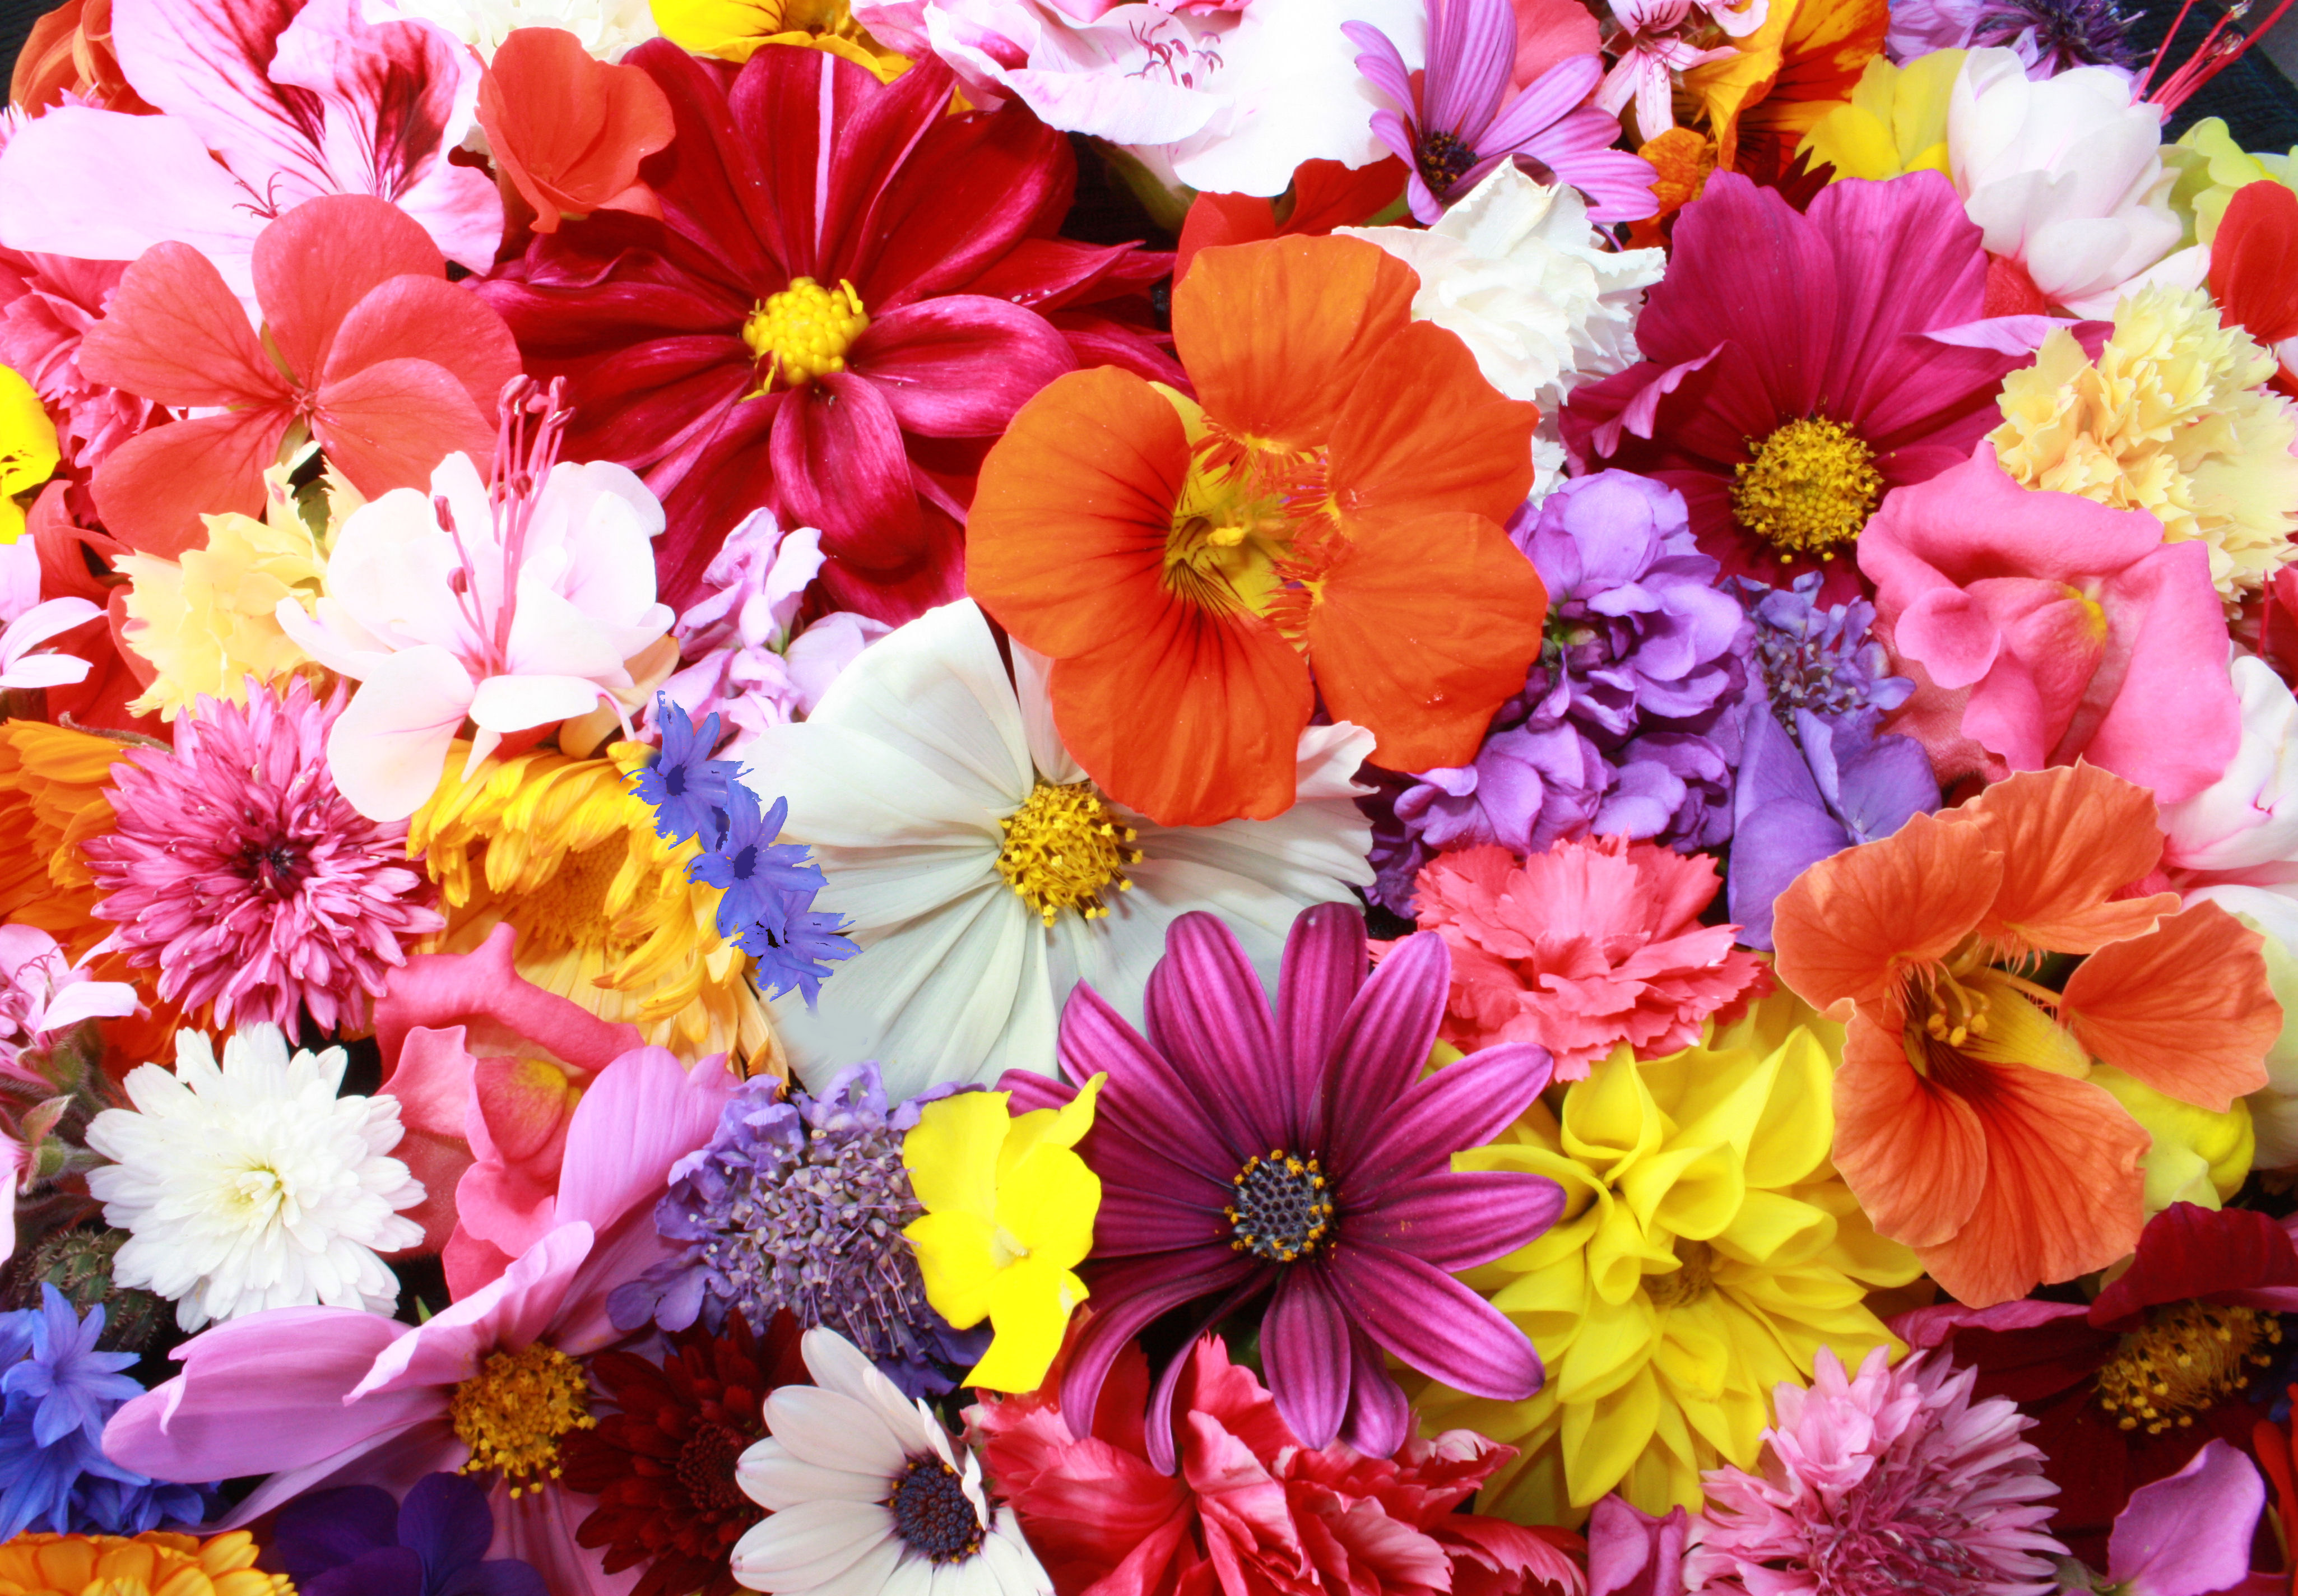 colorful hd flowers 4k 1606508437 - Colorful HD Flowers 4k - Colorful HD Flowers 4k wallpapers